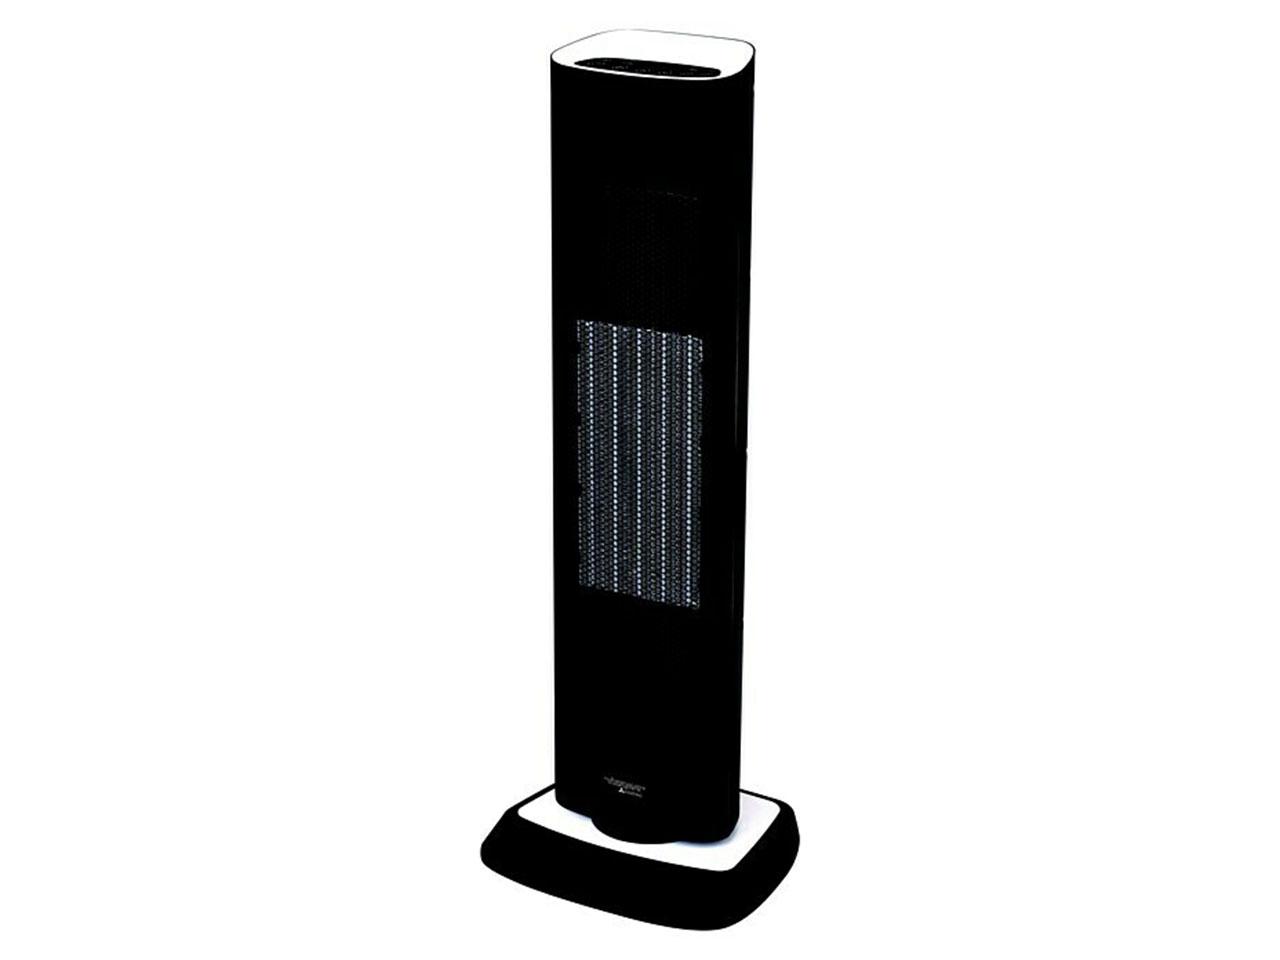 Keramický topný ventilátor VOLTOMAT Heating, 2000 W, černá/bílá